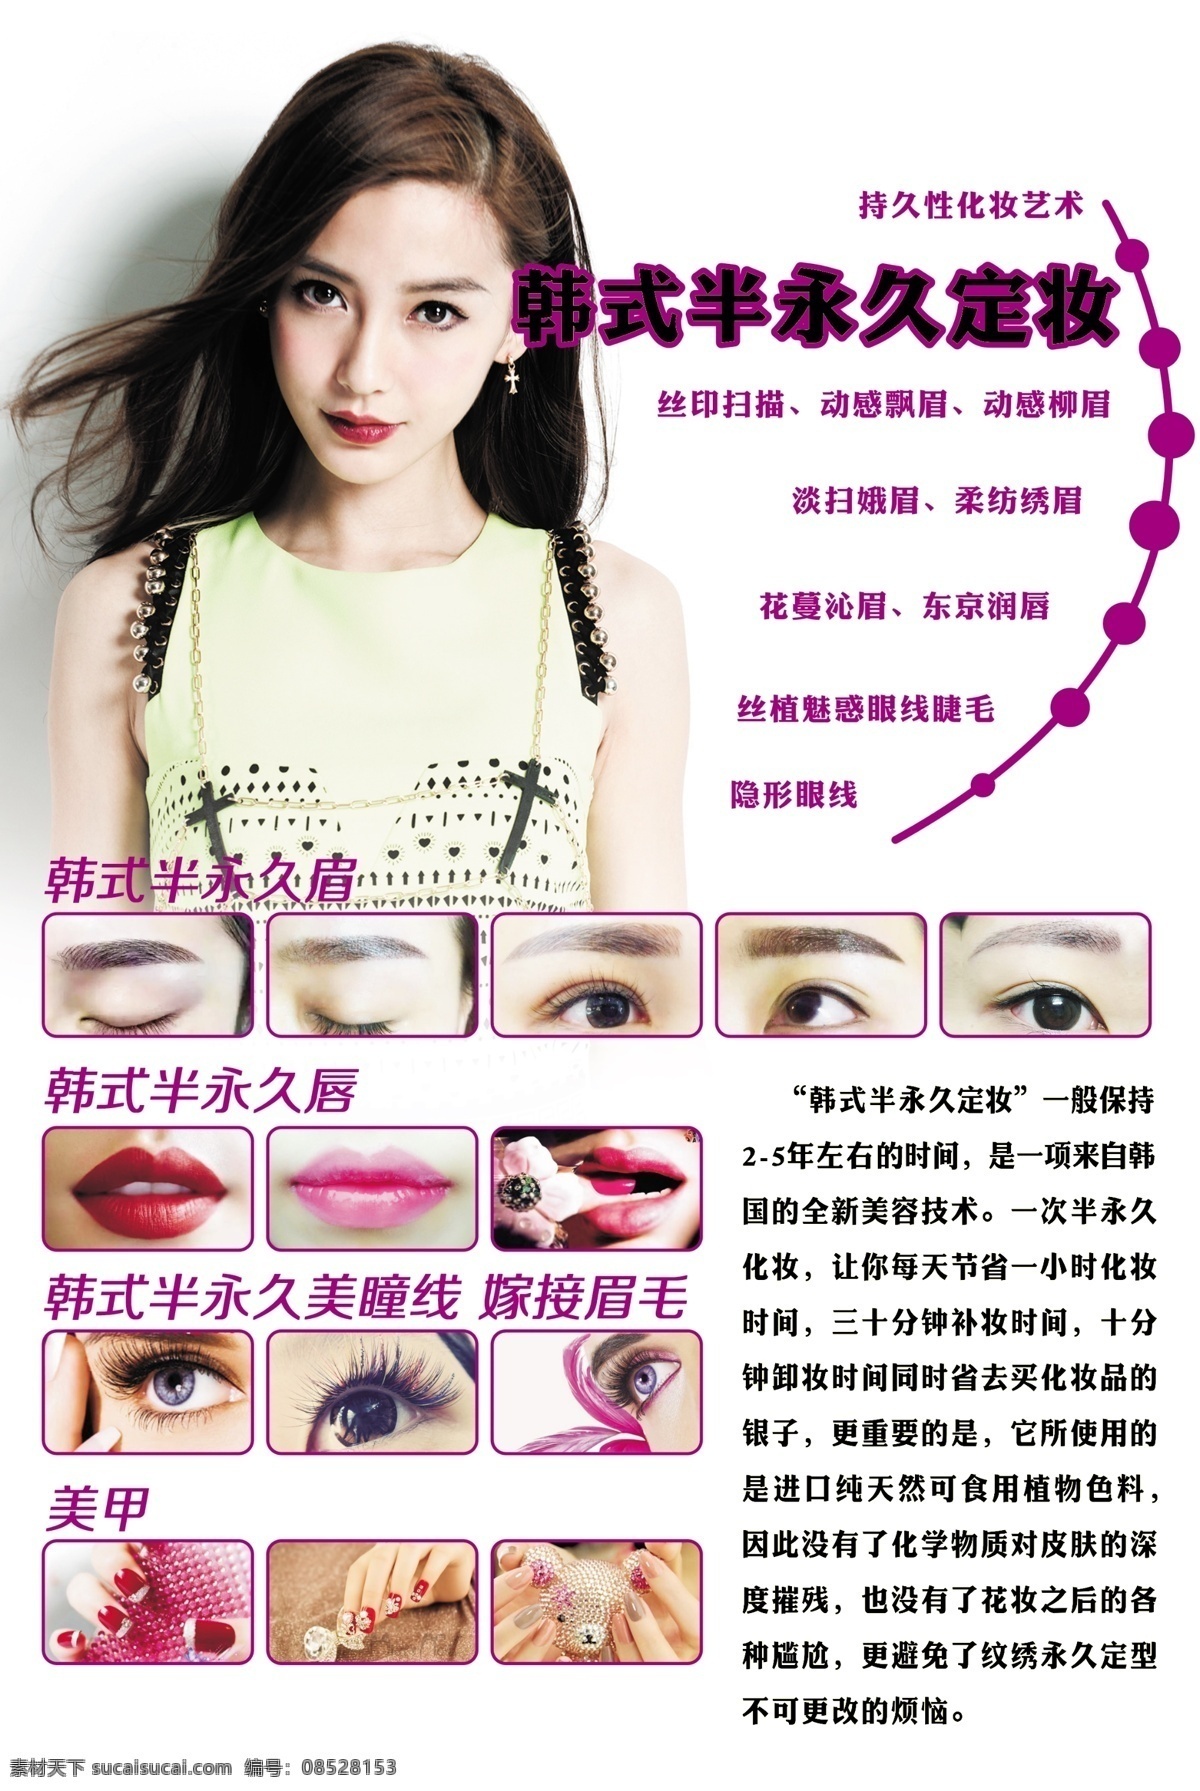 韩式 半 永久 定妆 平面设计企业 宣传画册海报 广告菜单展板 包装封面图片 折页排版制作